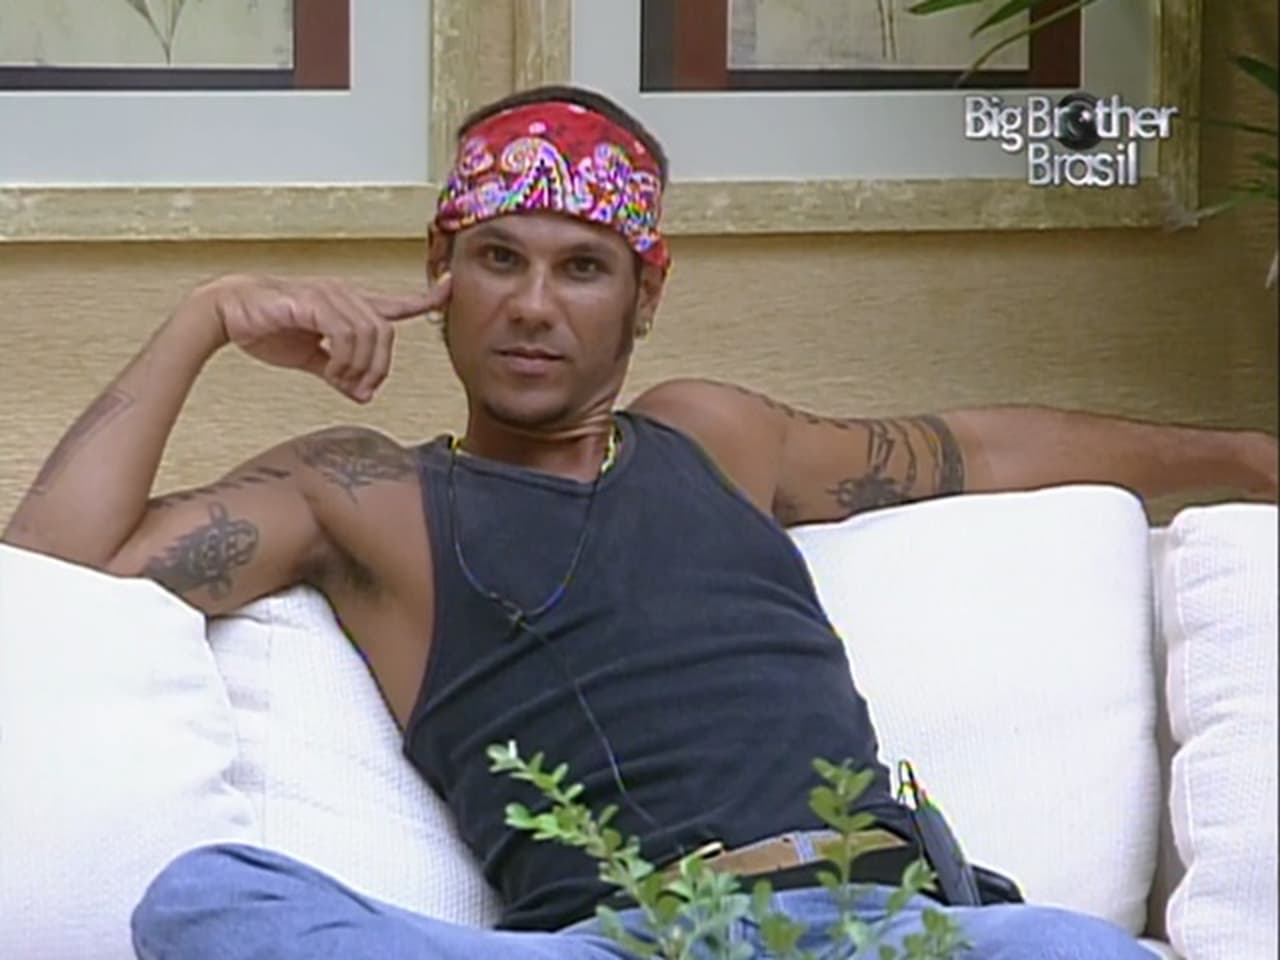 Big Brother Brasil - Season 3 Episode 64 : Episode 64